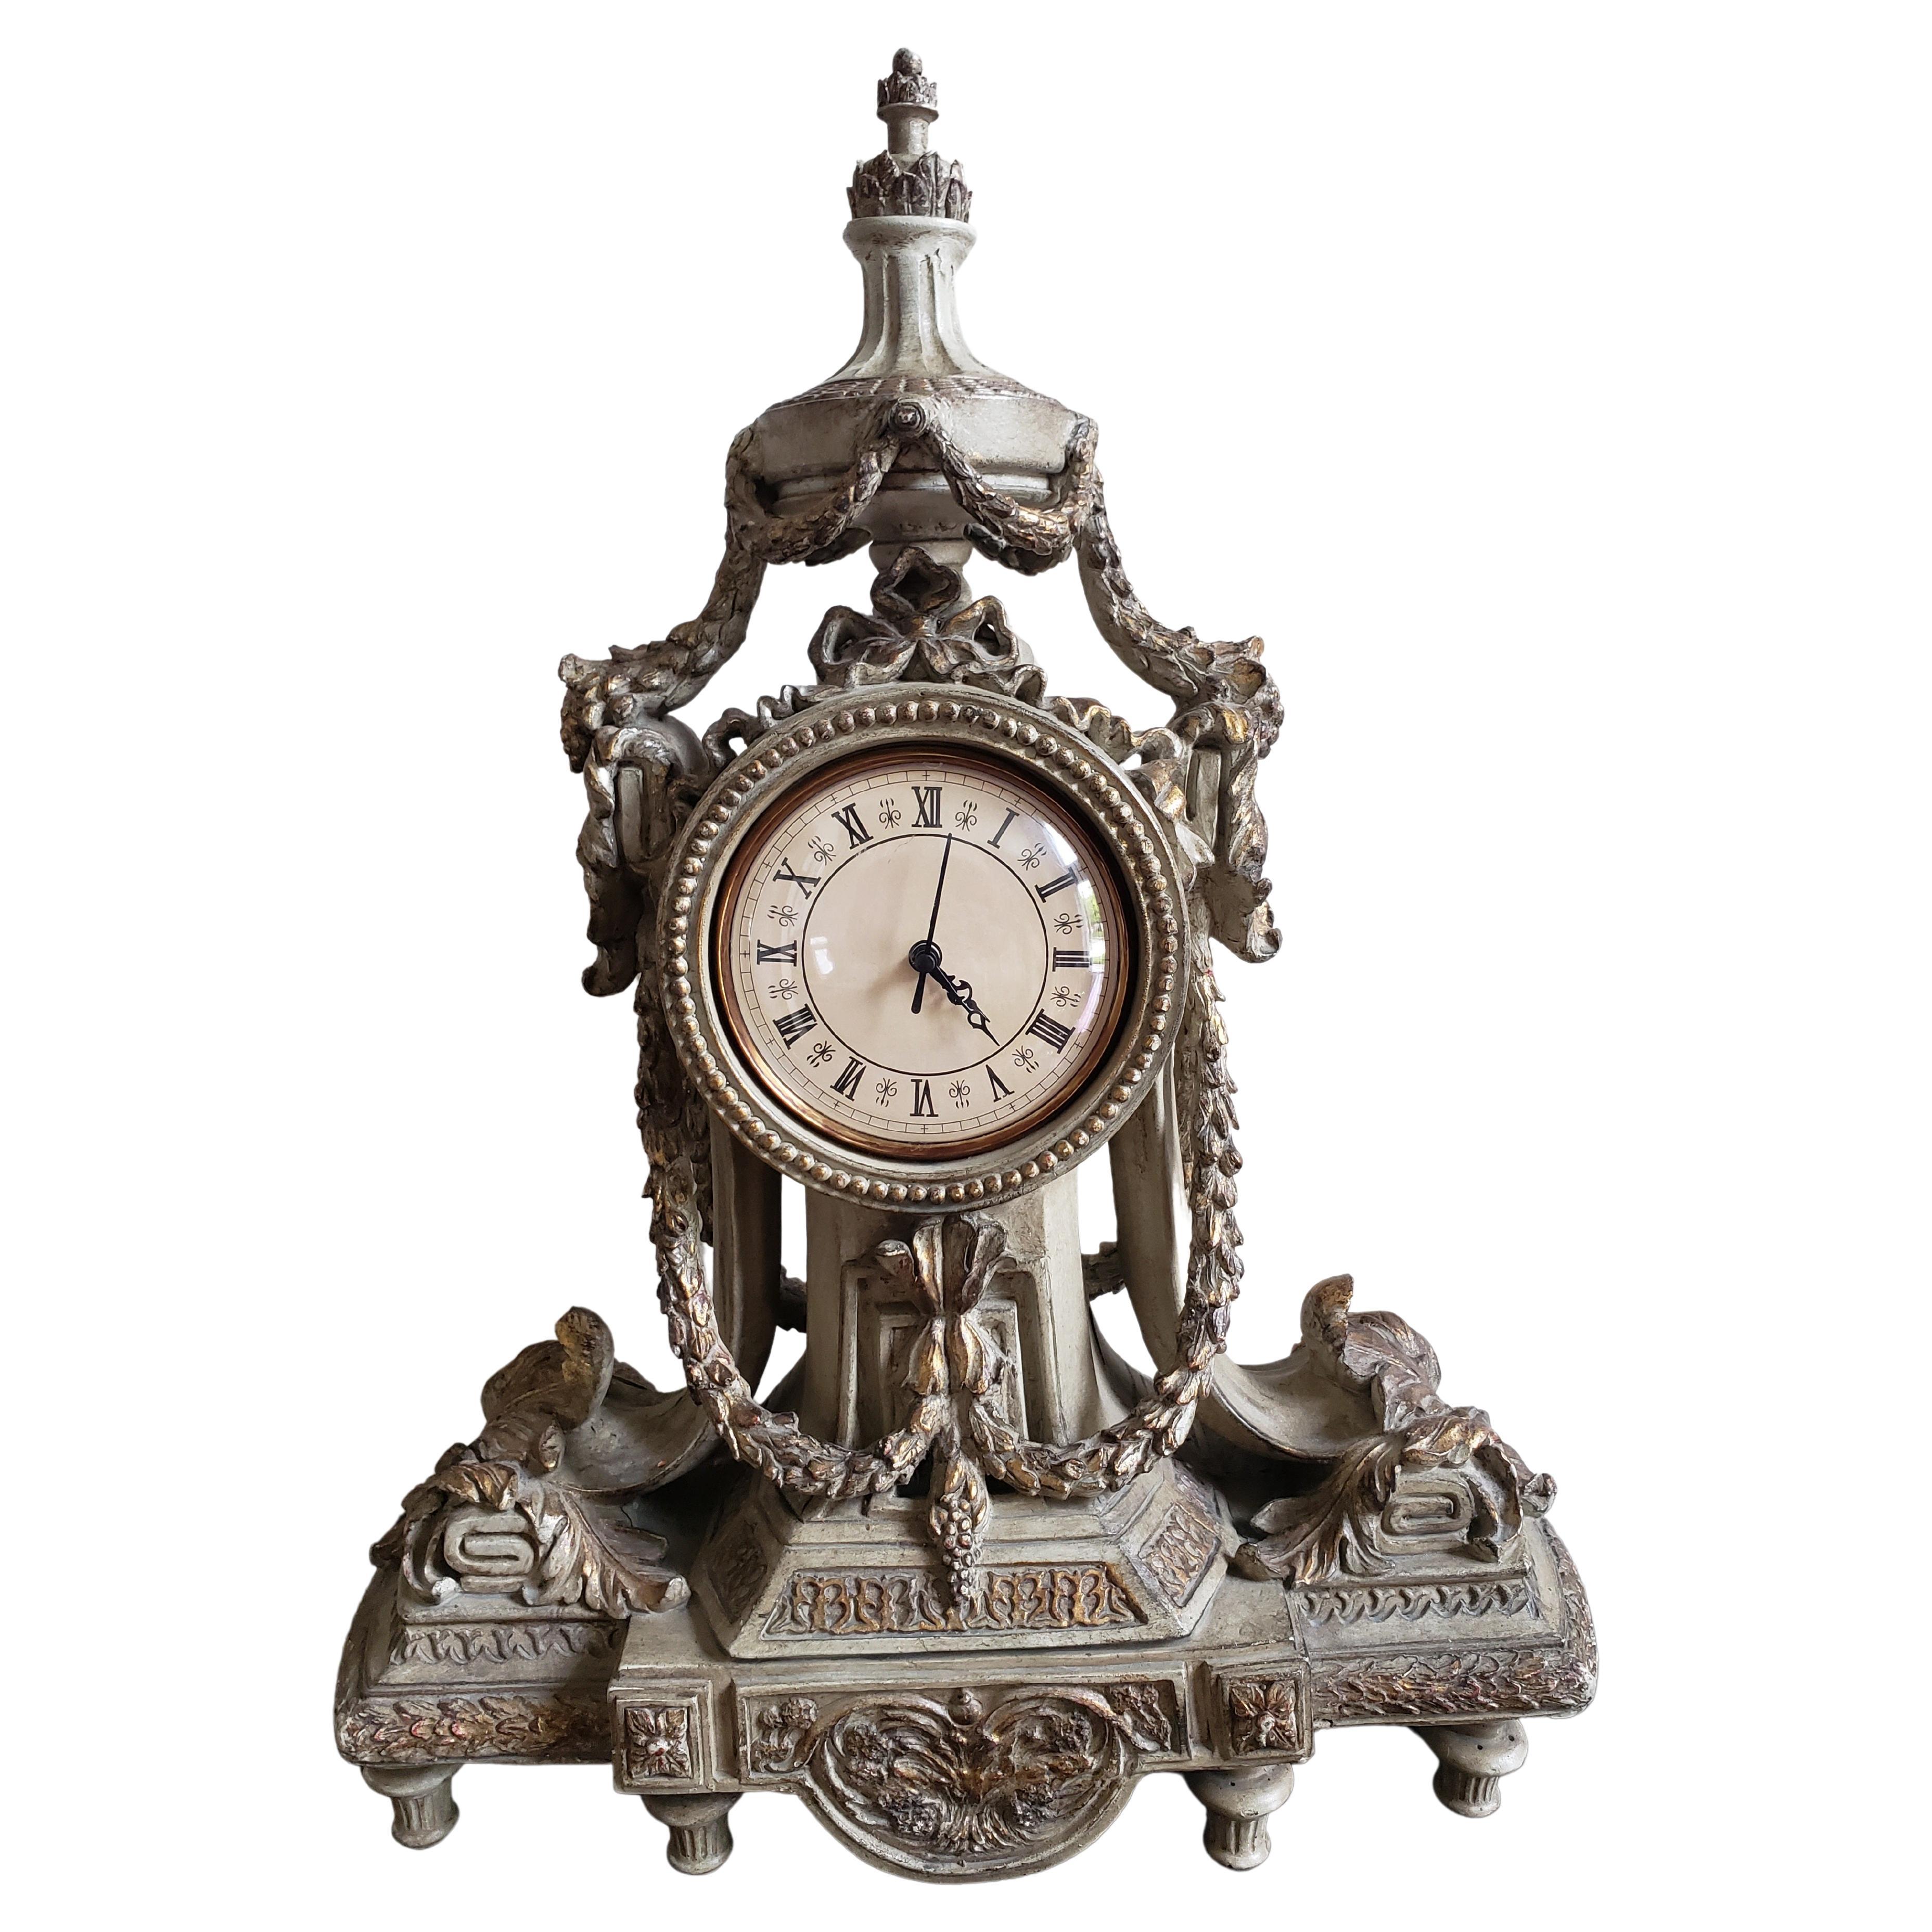 Louis XVI Stil Teilweise vergoldet und dekoriert Mantle Clock. In Anlehnung an die dekorativen Künste des 19. Jahrhunderts verbindet dieses hochwertige Designerstück Stil und Funktion, indem es in der reichen Farbpalette der antiken Welt erstrahlt.